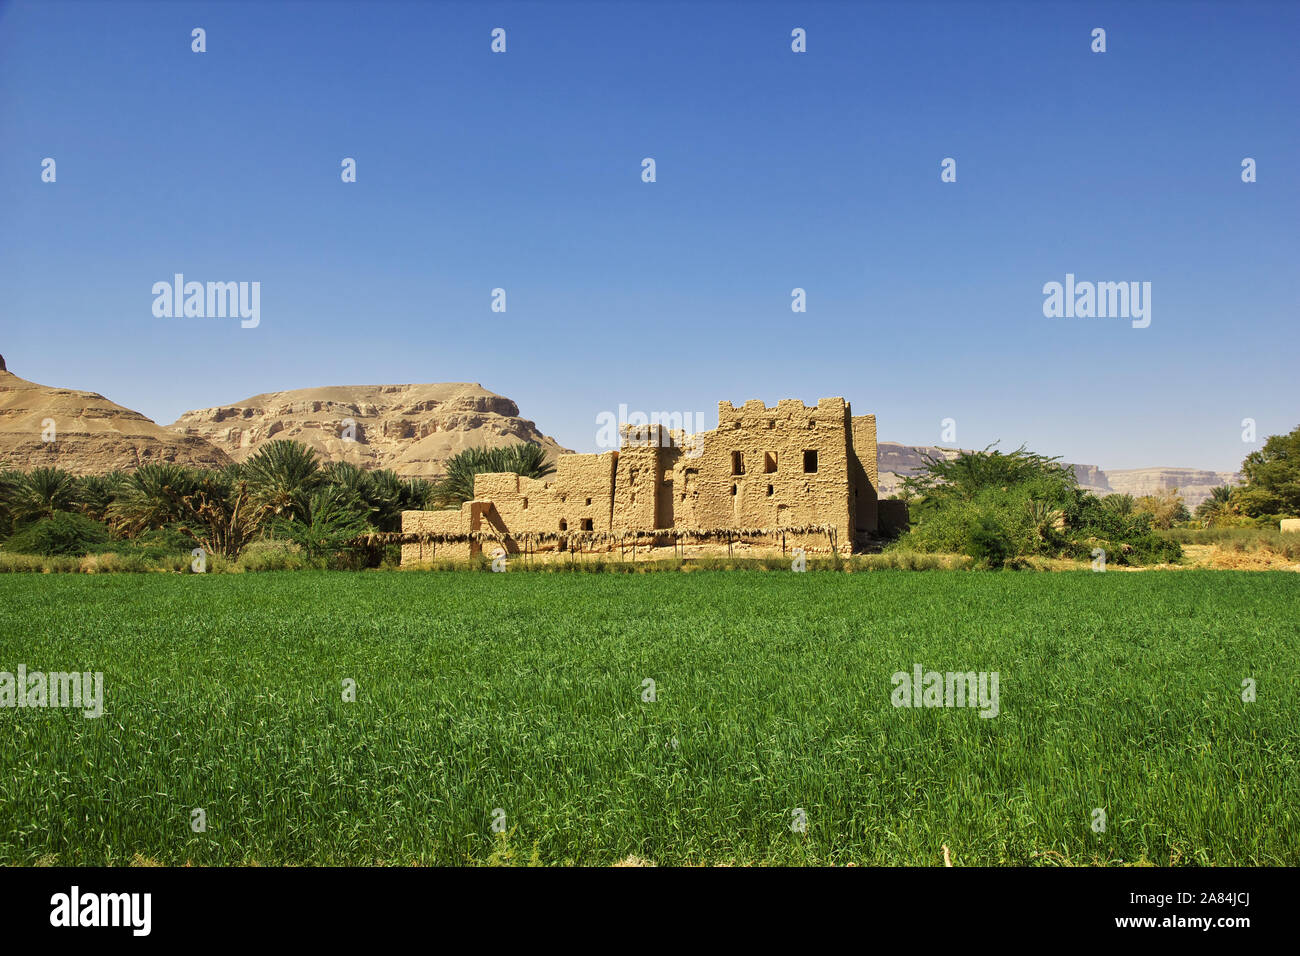 Kasbah, the vinatge house in mountains in Wadi Hadhramaut, Yemen Stock Photo